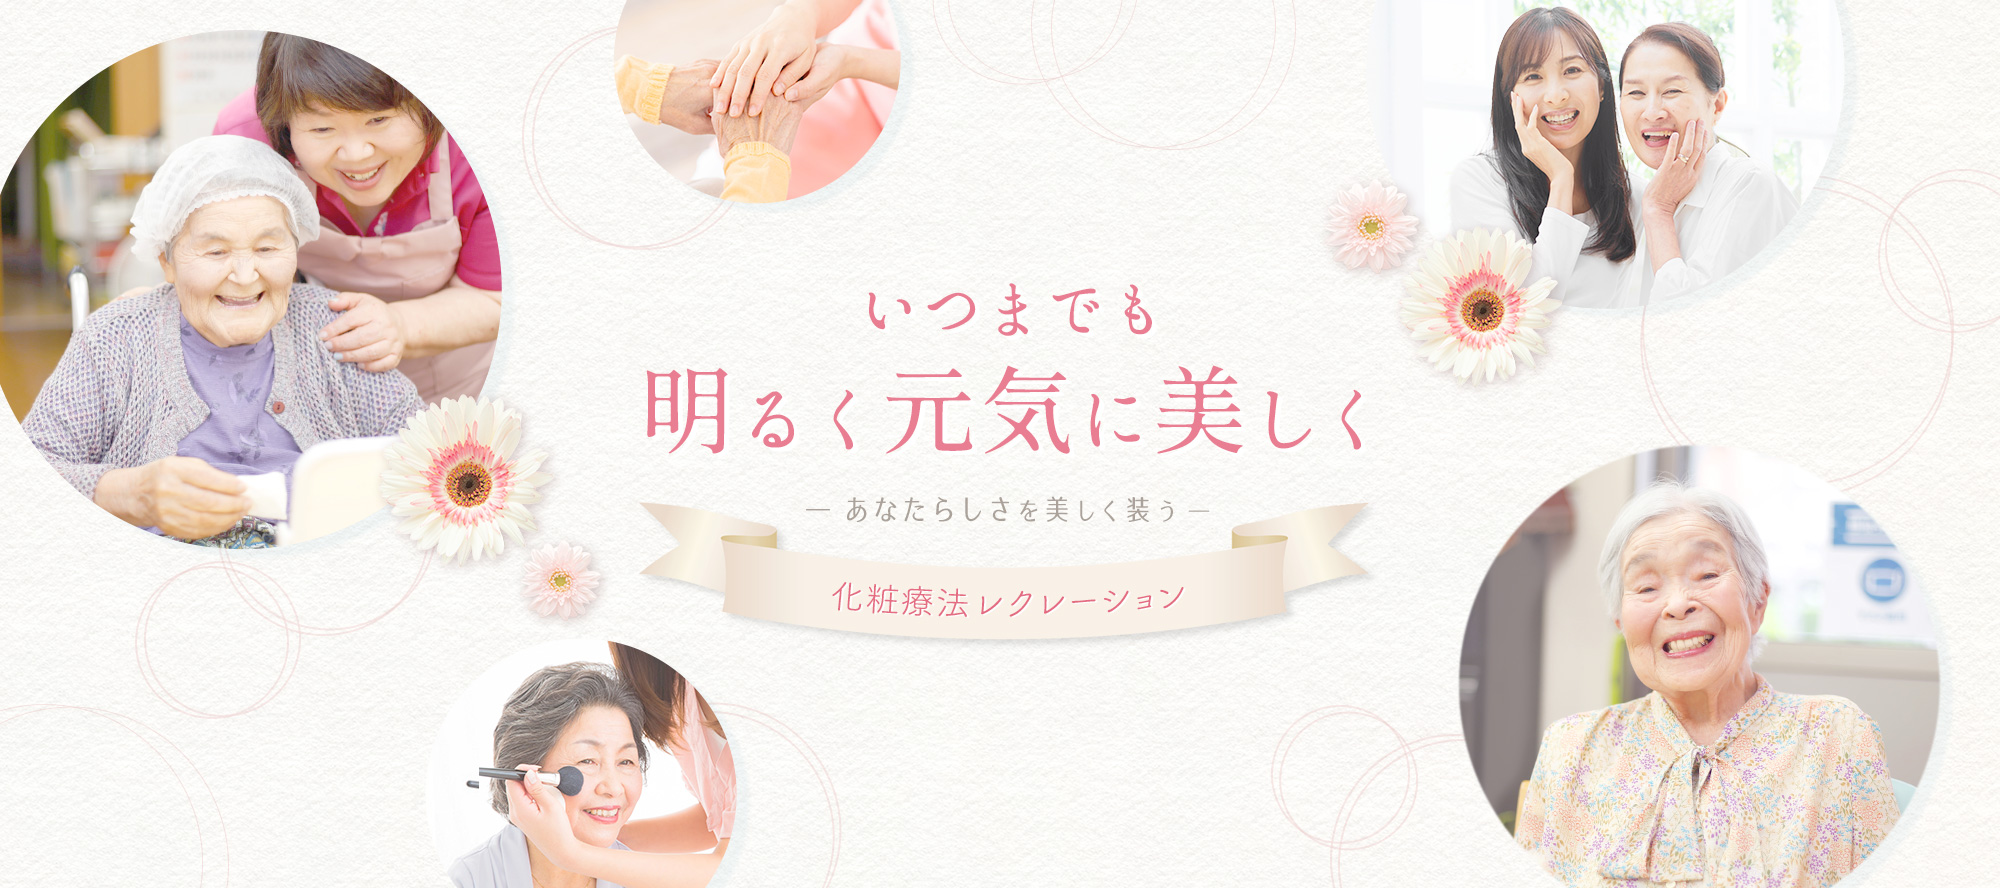 化粧療法セラピスト資格なら、日本化粧療法レクレーション協会へ